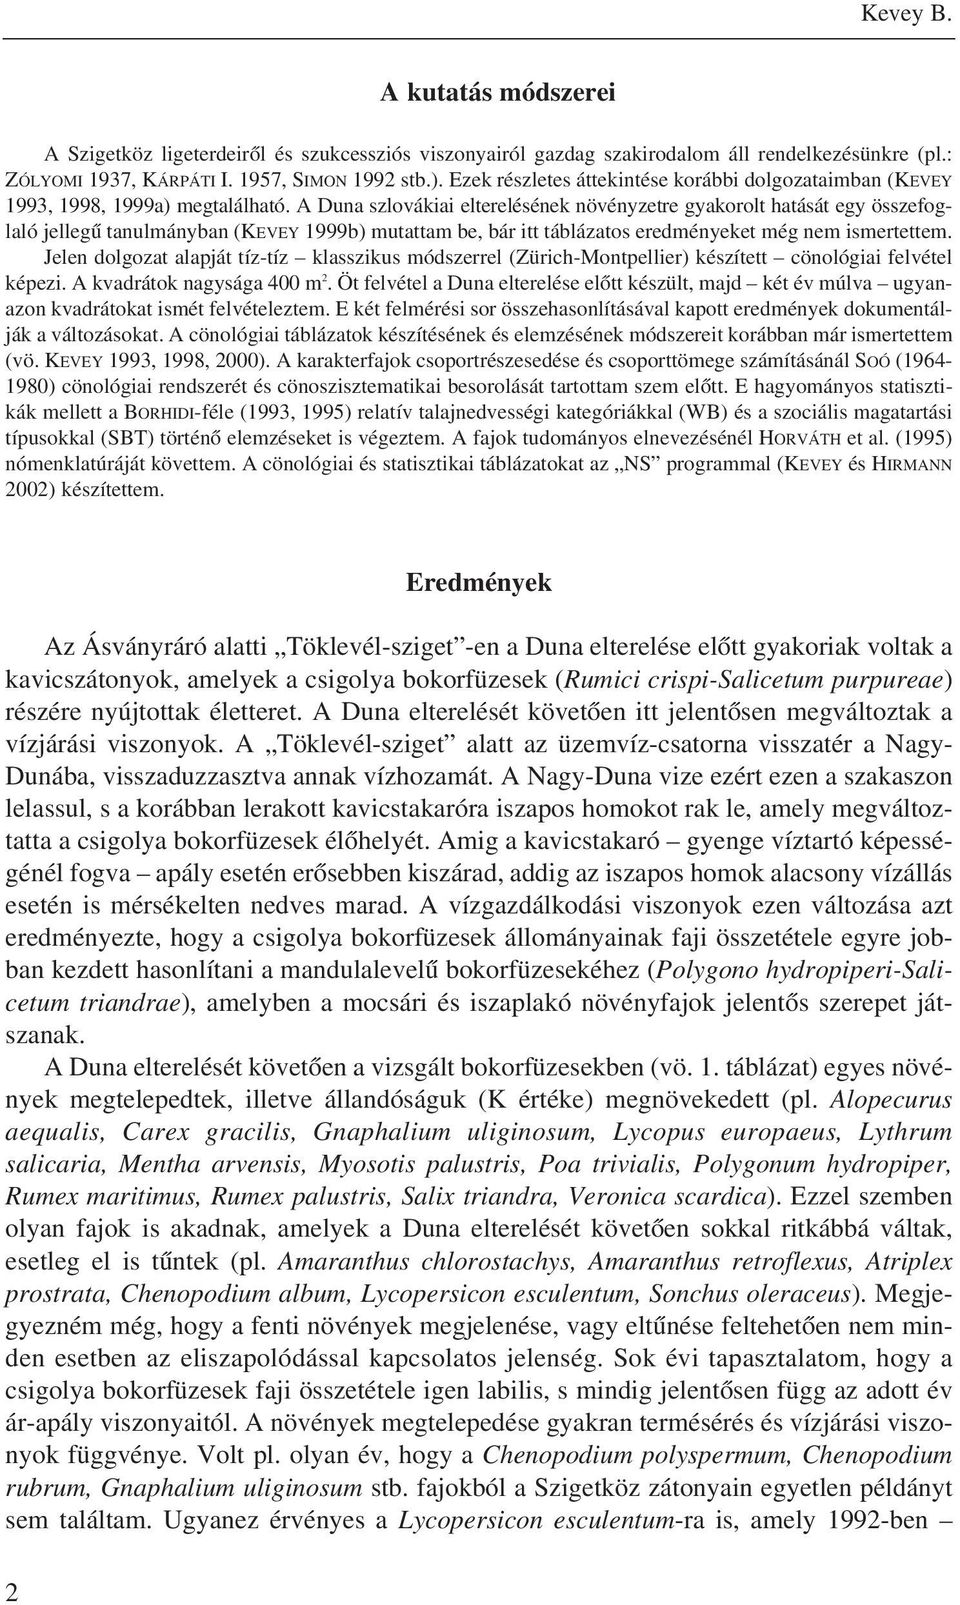 A Duna szlovákiai elterelésének növényzetre gyakorolt hatását egy összefoglaló jellegû tanulmányban (KEVEY 1999b) mutattam be, bár itt táblázatos eredményeket még nem ismertettem.